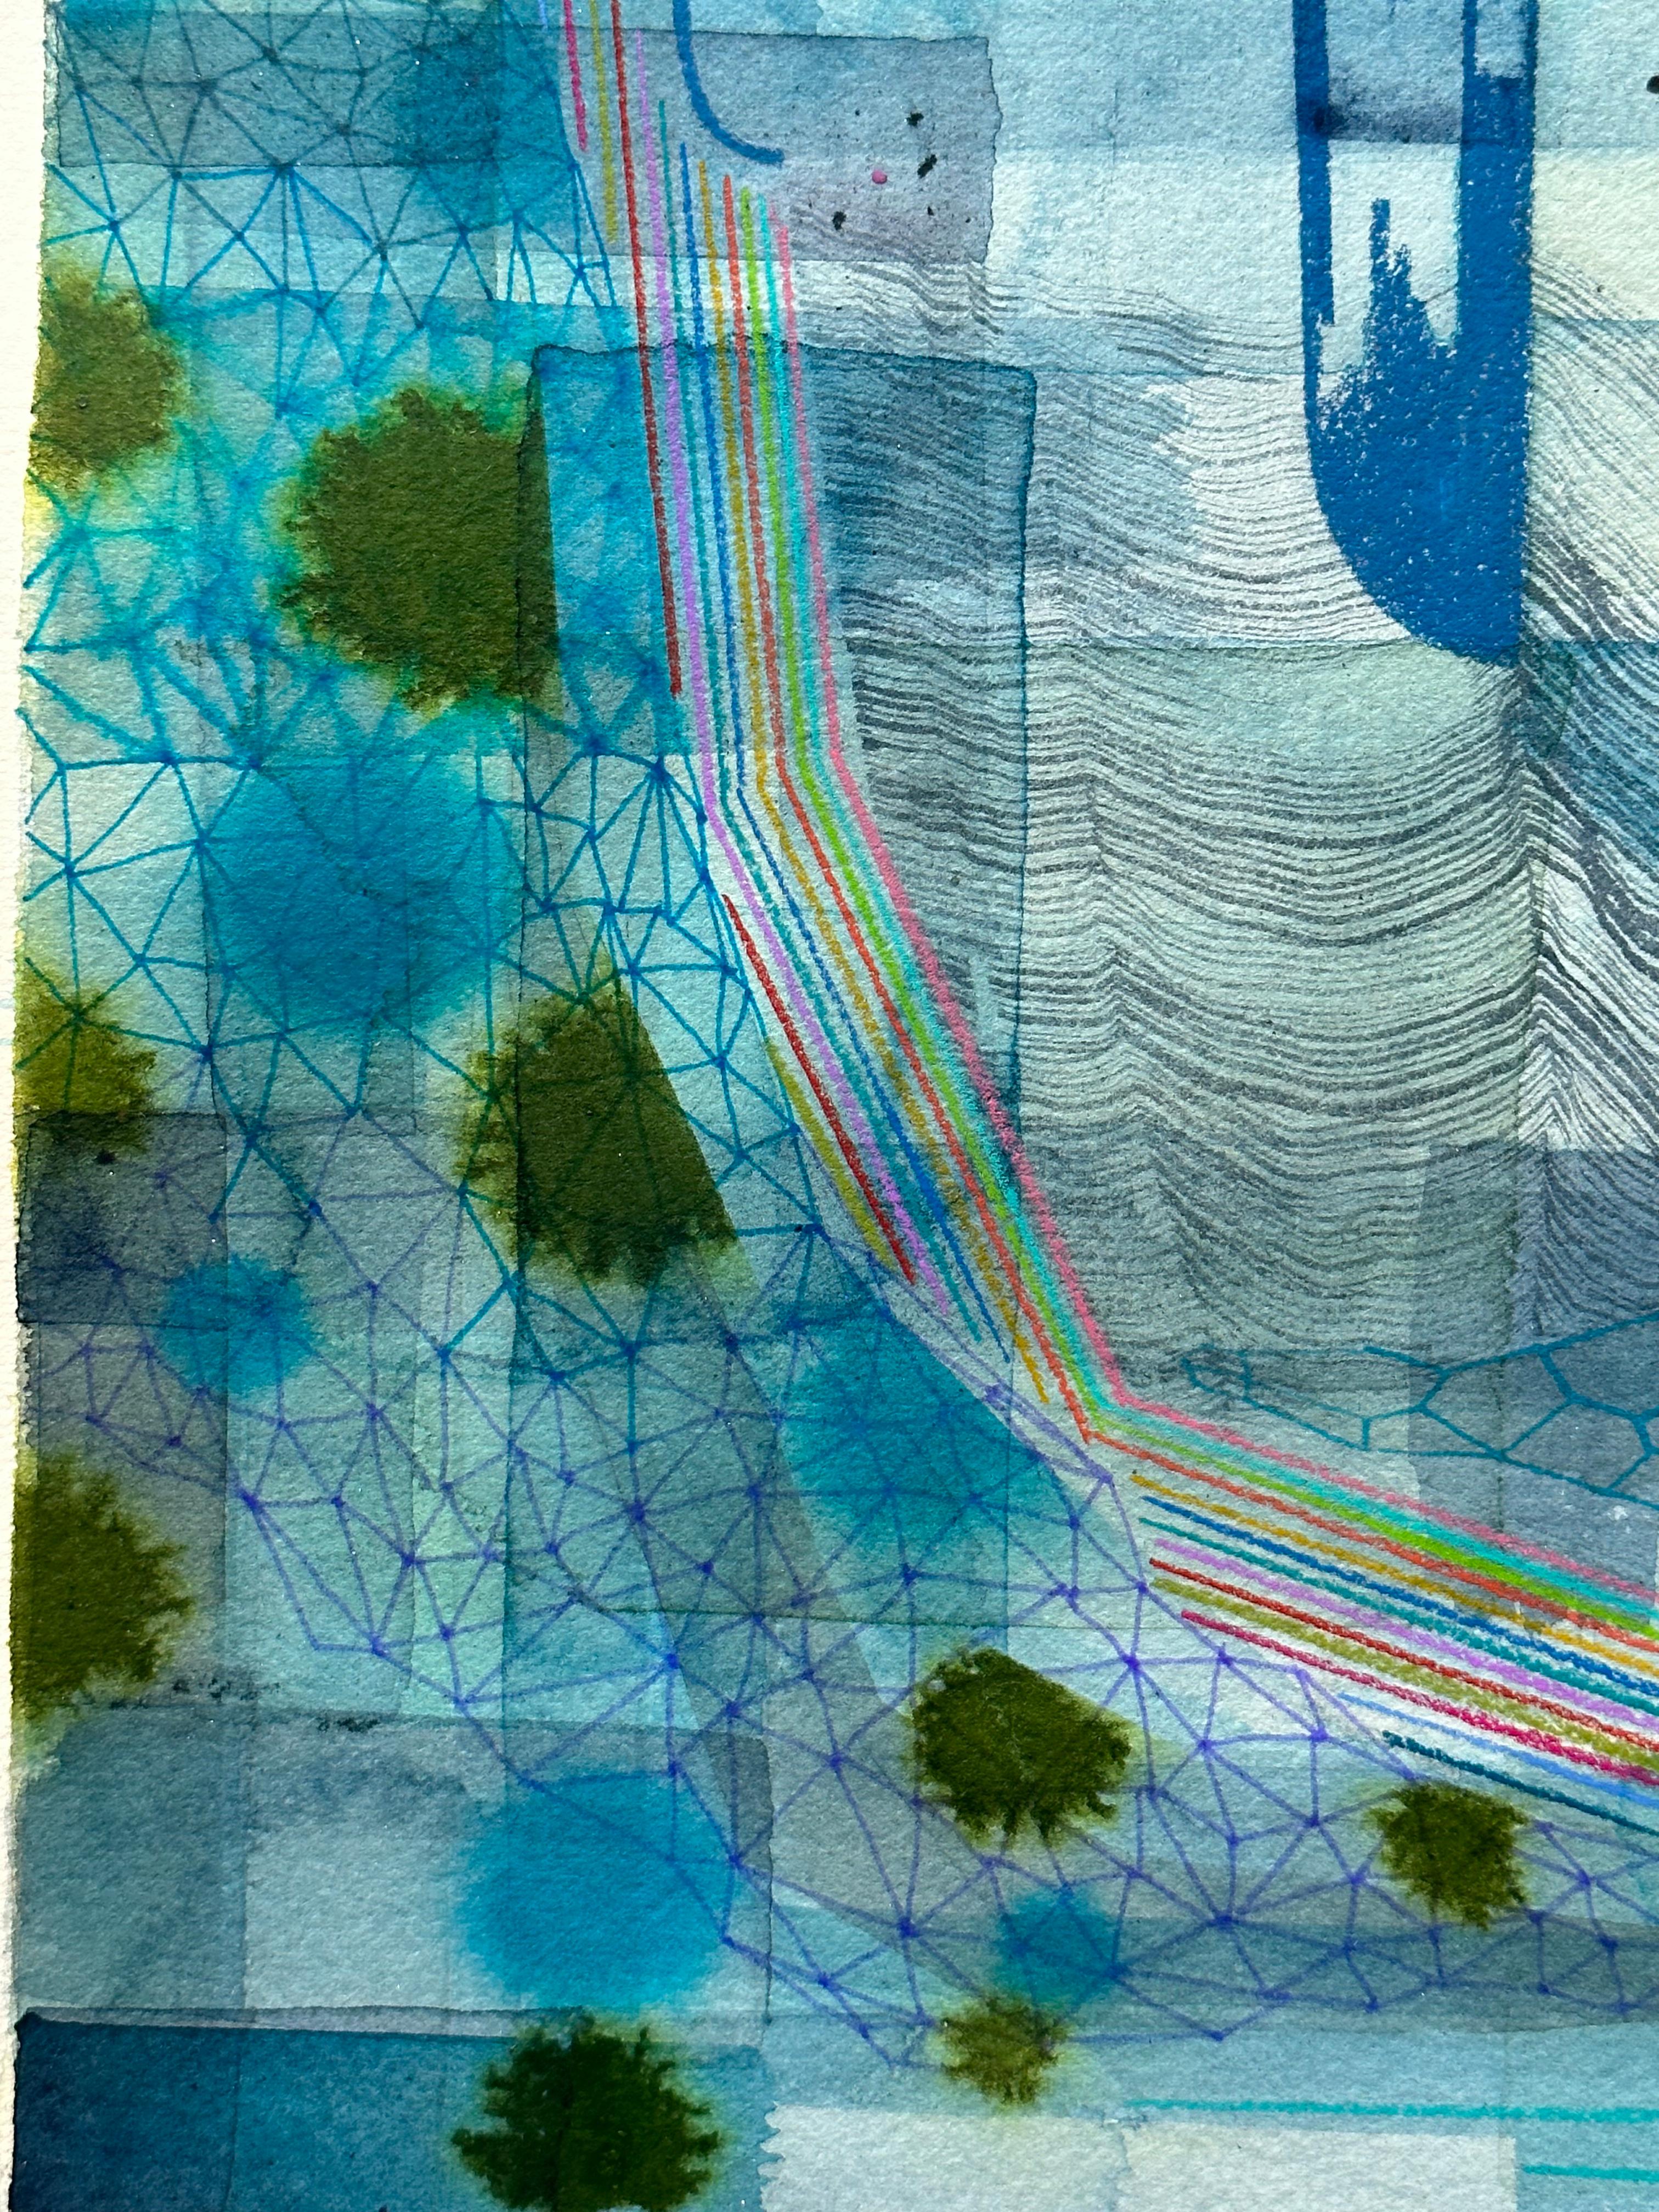 Sorgfältig angeordnete Muster und geometrische Formen in Indigo, Marineblau und Olivgrün mit zarten prismatischen Regenbogenlinien ergänzen einen sanften graublauen Hintergrund. Verso signiert.

Brown erforscht eine Welt jenseits der greifbaren